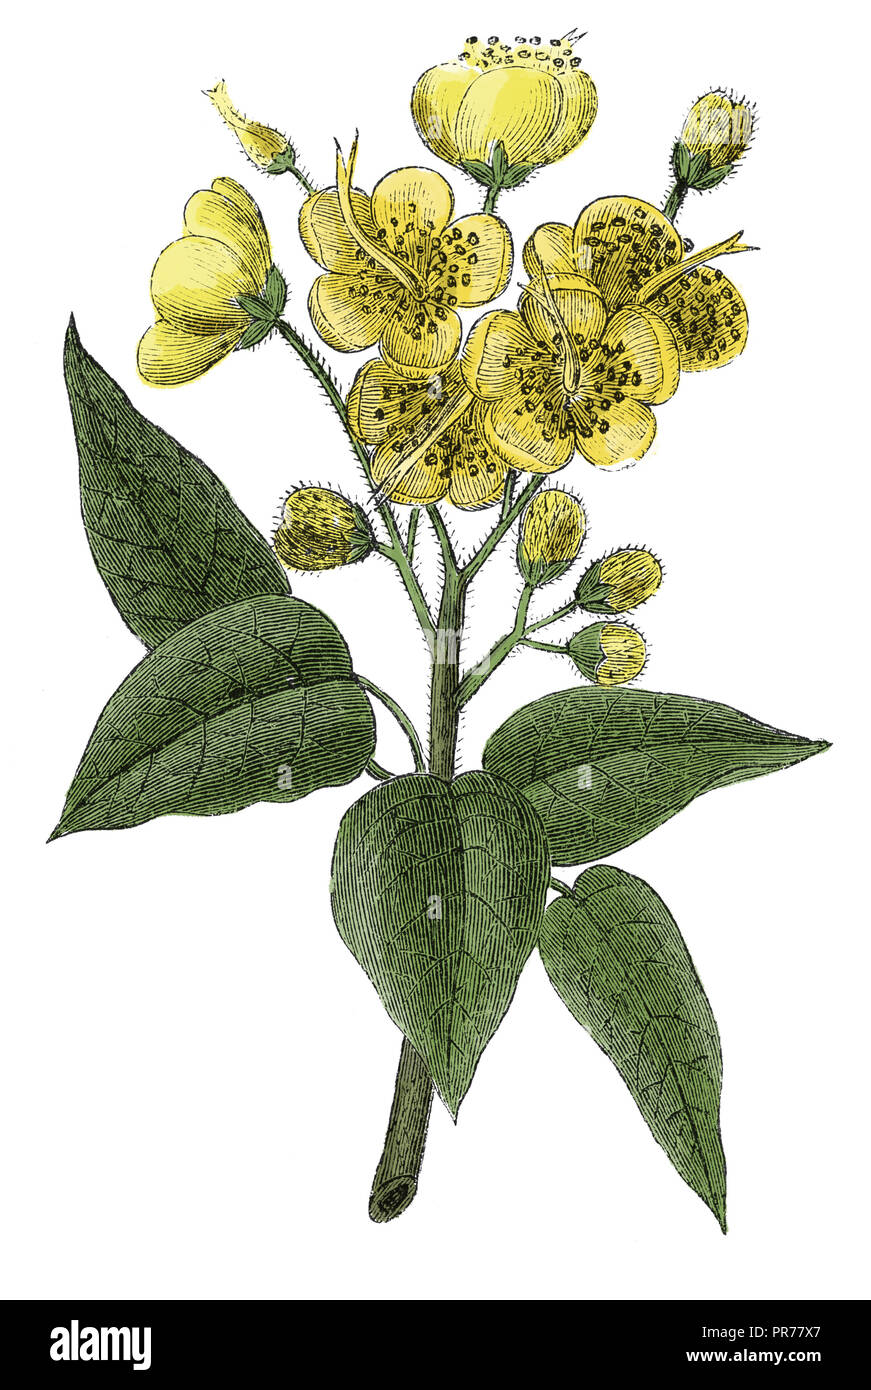 19 Abbildung: Berberis vulgaris, auch als beberitze oder Berberitze bekannt. In systematischer Bilder-Atlas zum Gespräch veröffentlicht. Stockfoto